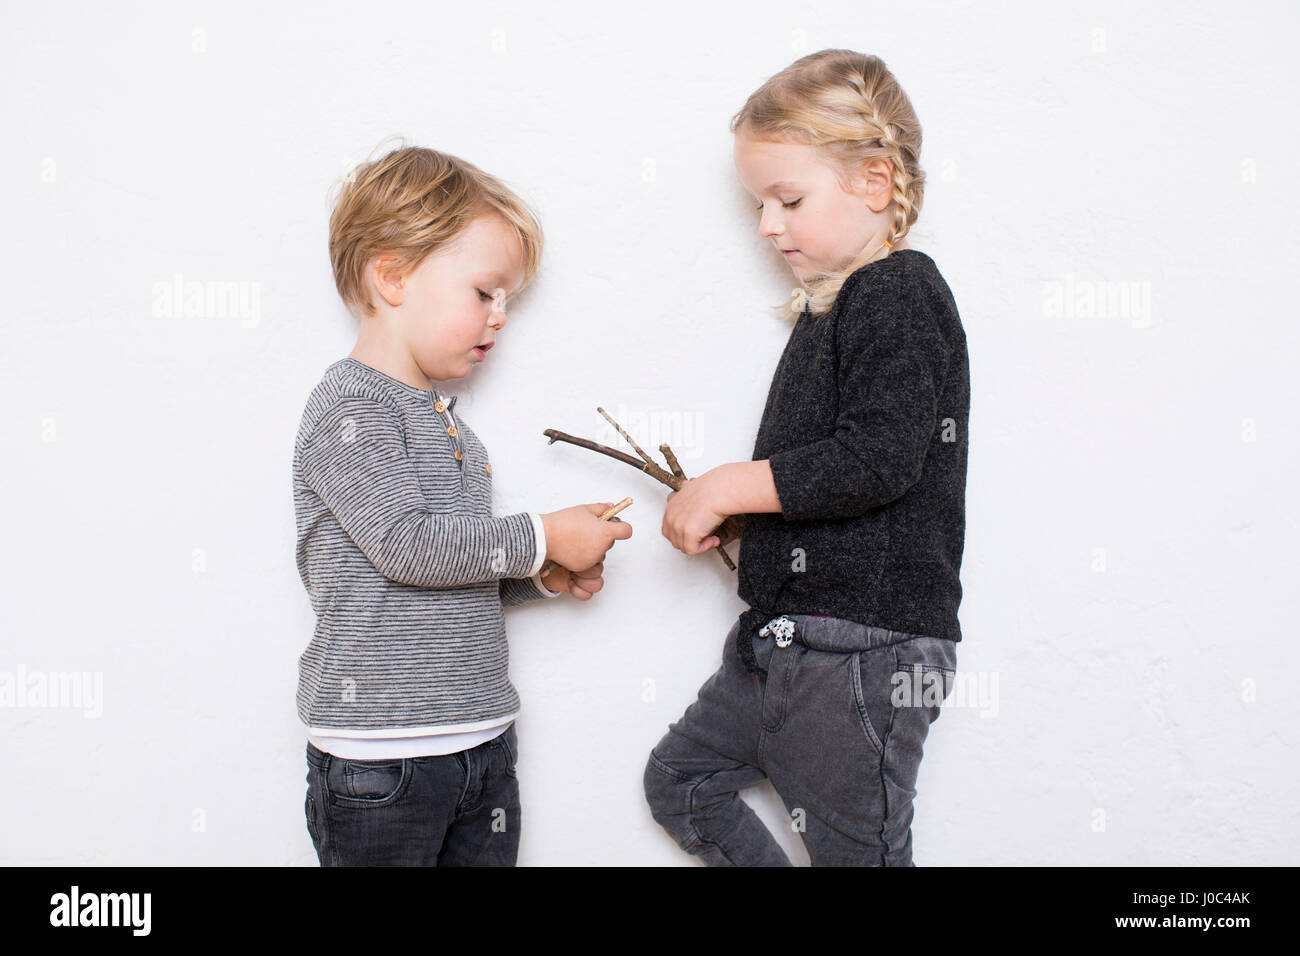 Giovane ragazza e ragazzo appoggiata contro uno sfondo bianco, ragazza con ramoscelli Foto Stock